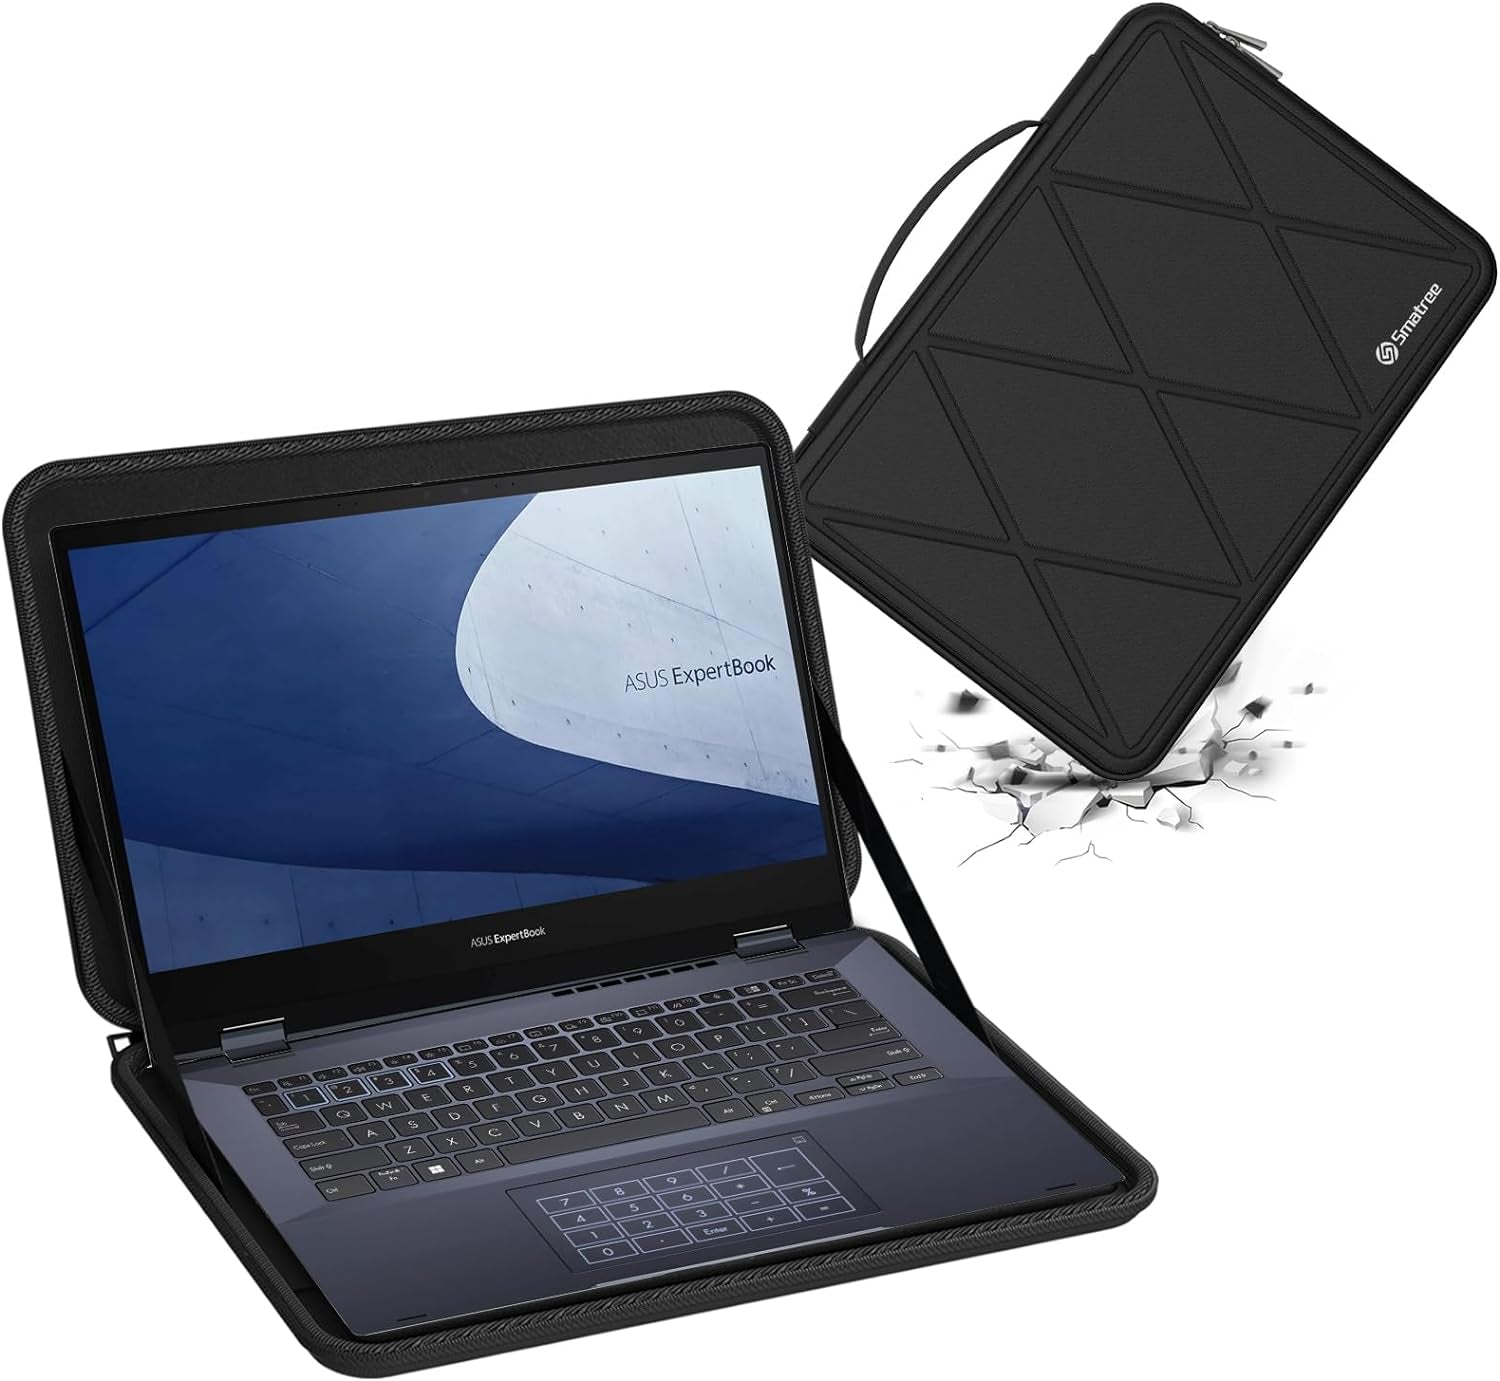 Hard Sleeve Case Compatible for 14 Inch ASUS Vivobook 14X/Flip 14/S 14 Flip, for ASUS Expertbook B5 Flip, for Zenbook Duo 14, for Chromebook Flip CX3, for ASUS L410/ROG Zephyrus G14 Bag(X8252)